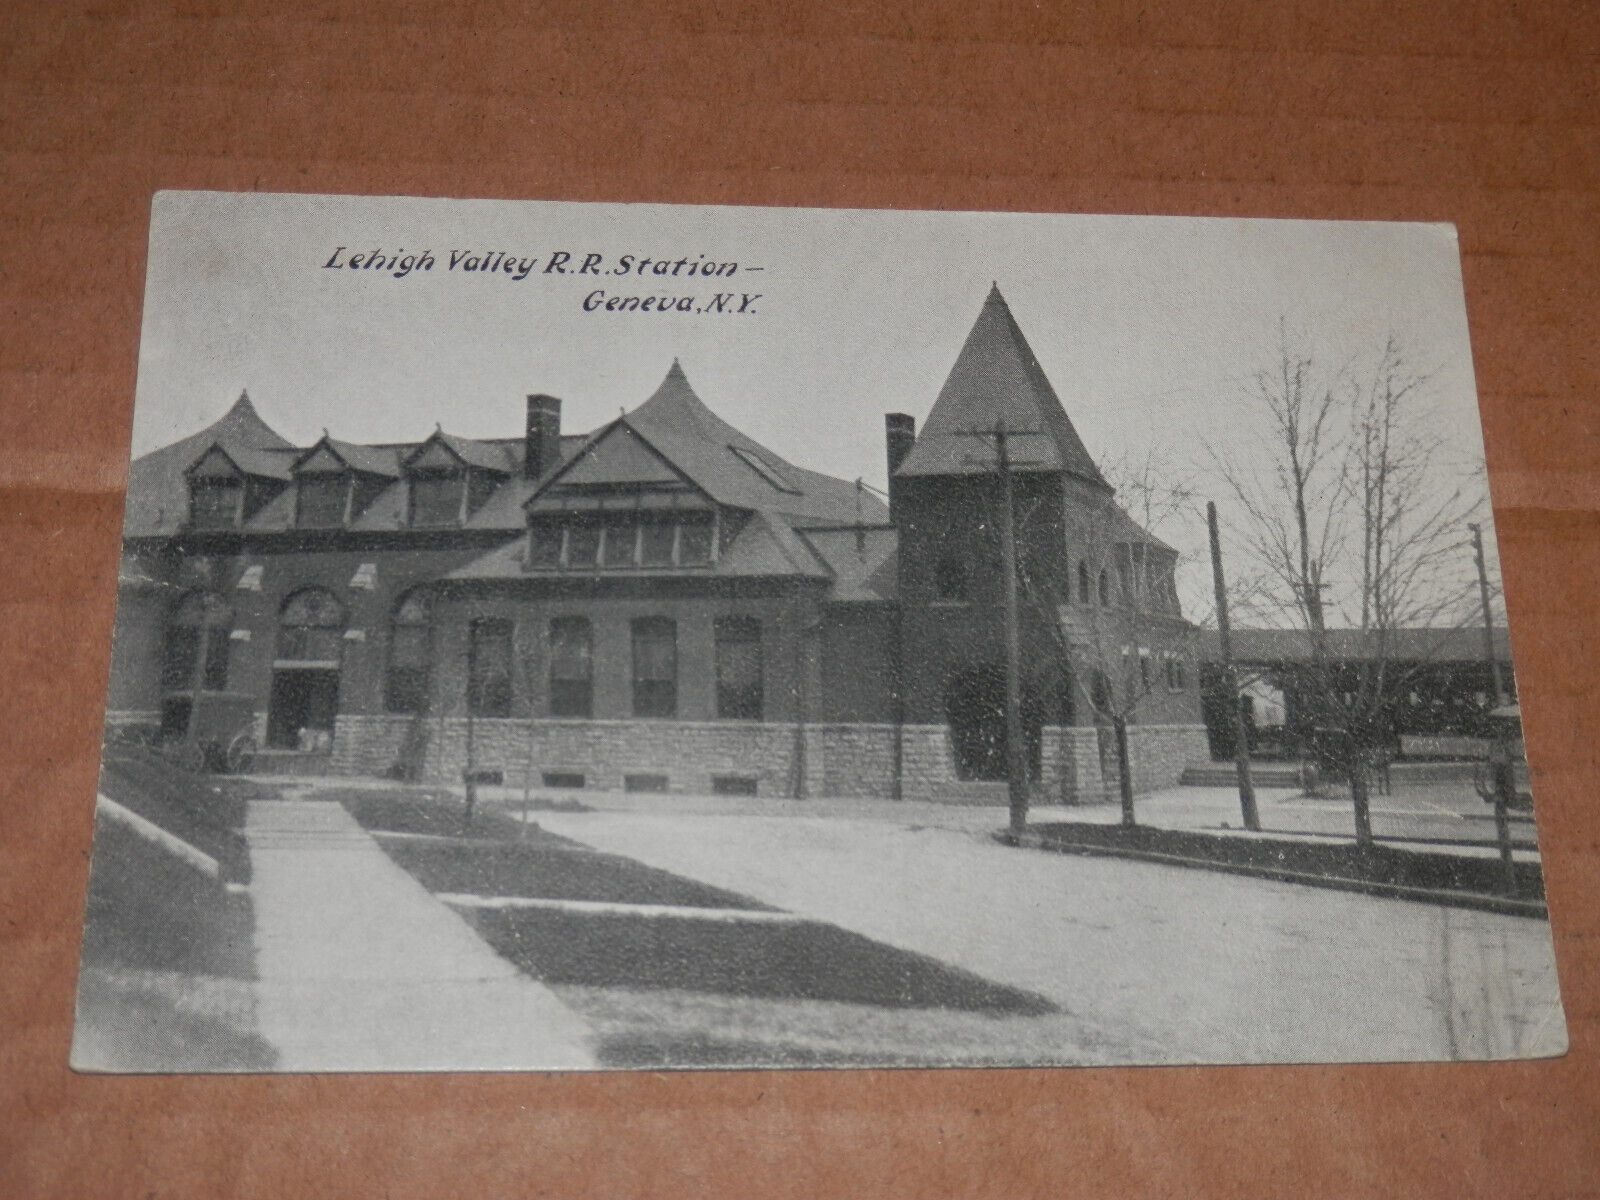 GENEVA NY - 1907-1915 ERA POSTCARD  - LEHIGH VALLEY RAILROAD STATION